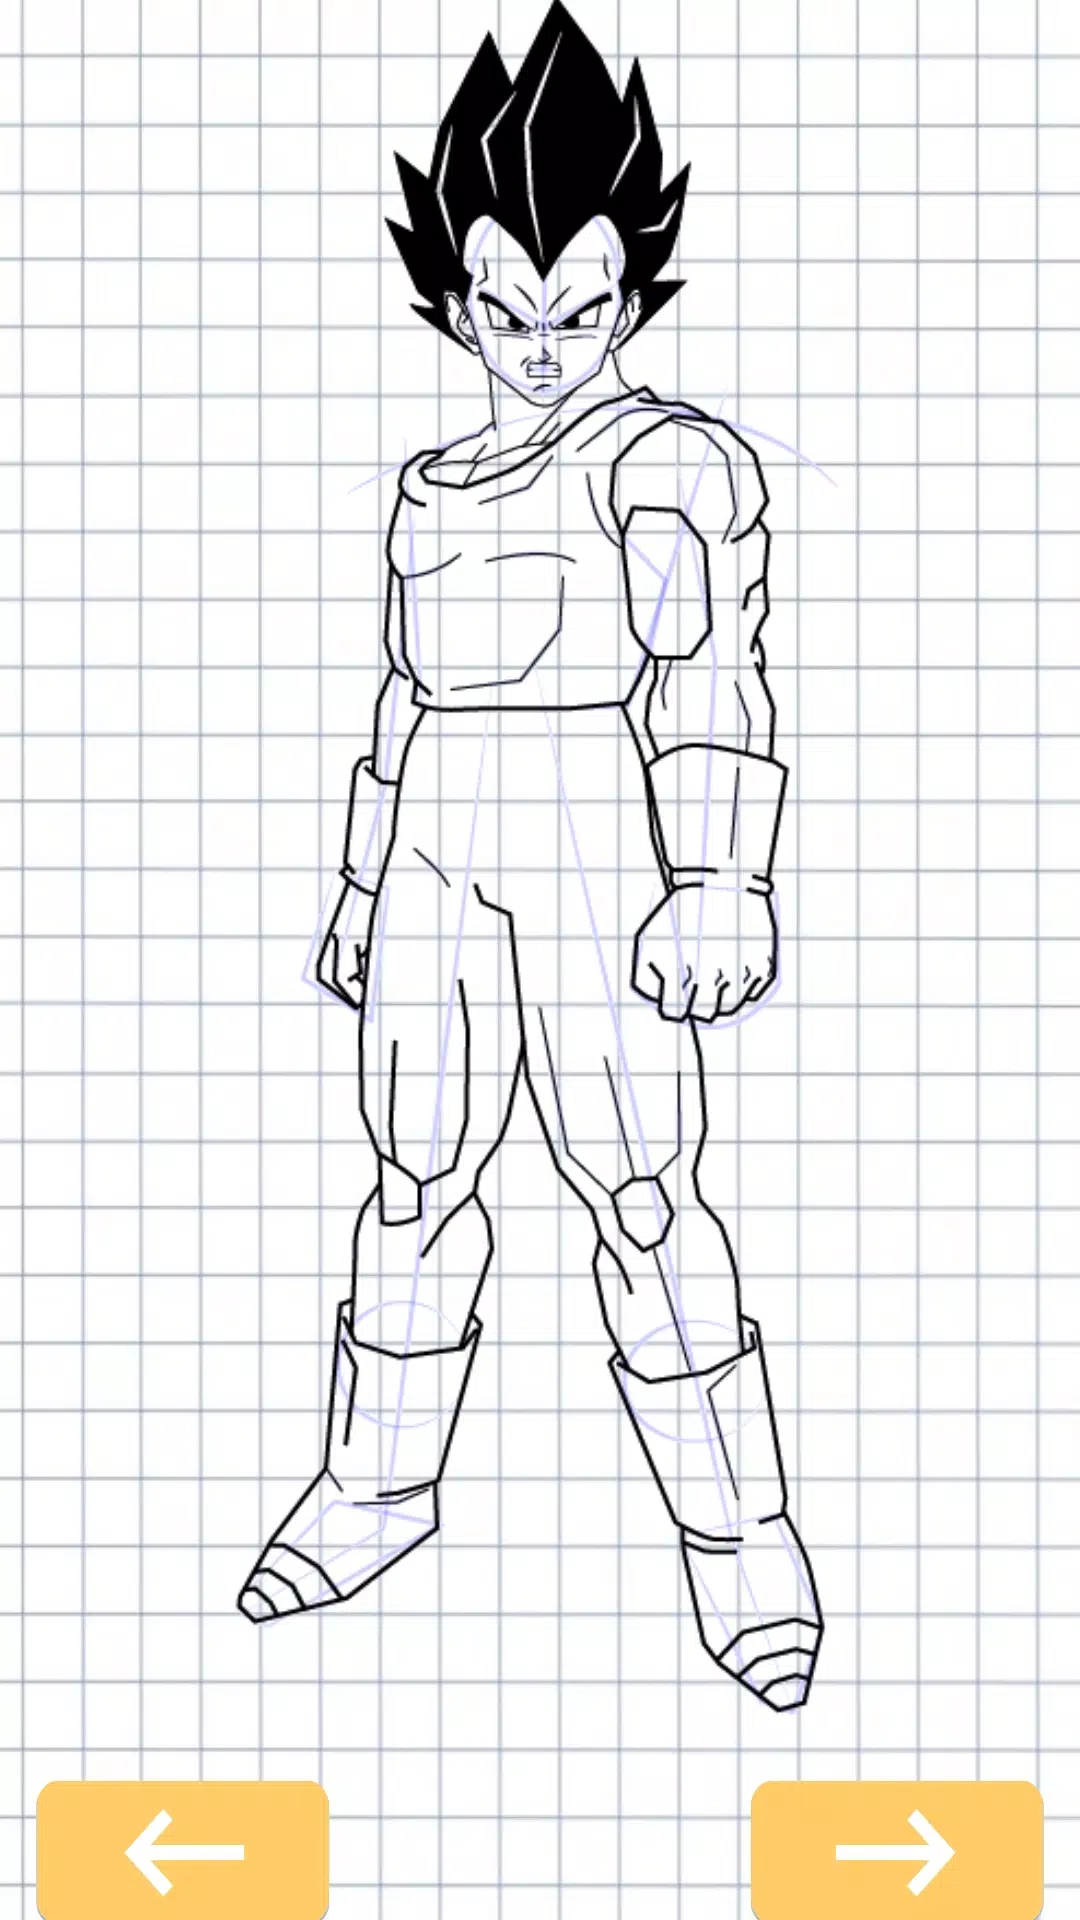 Download do APK de Como desenhar personagens Dragon Ball Super Z para  Android